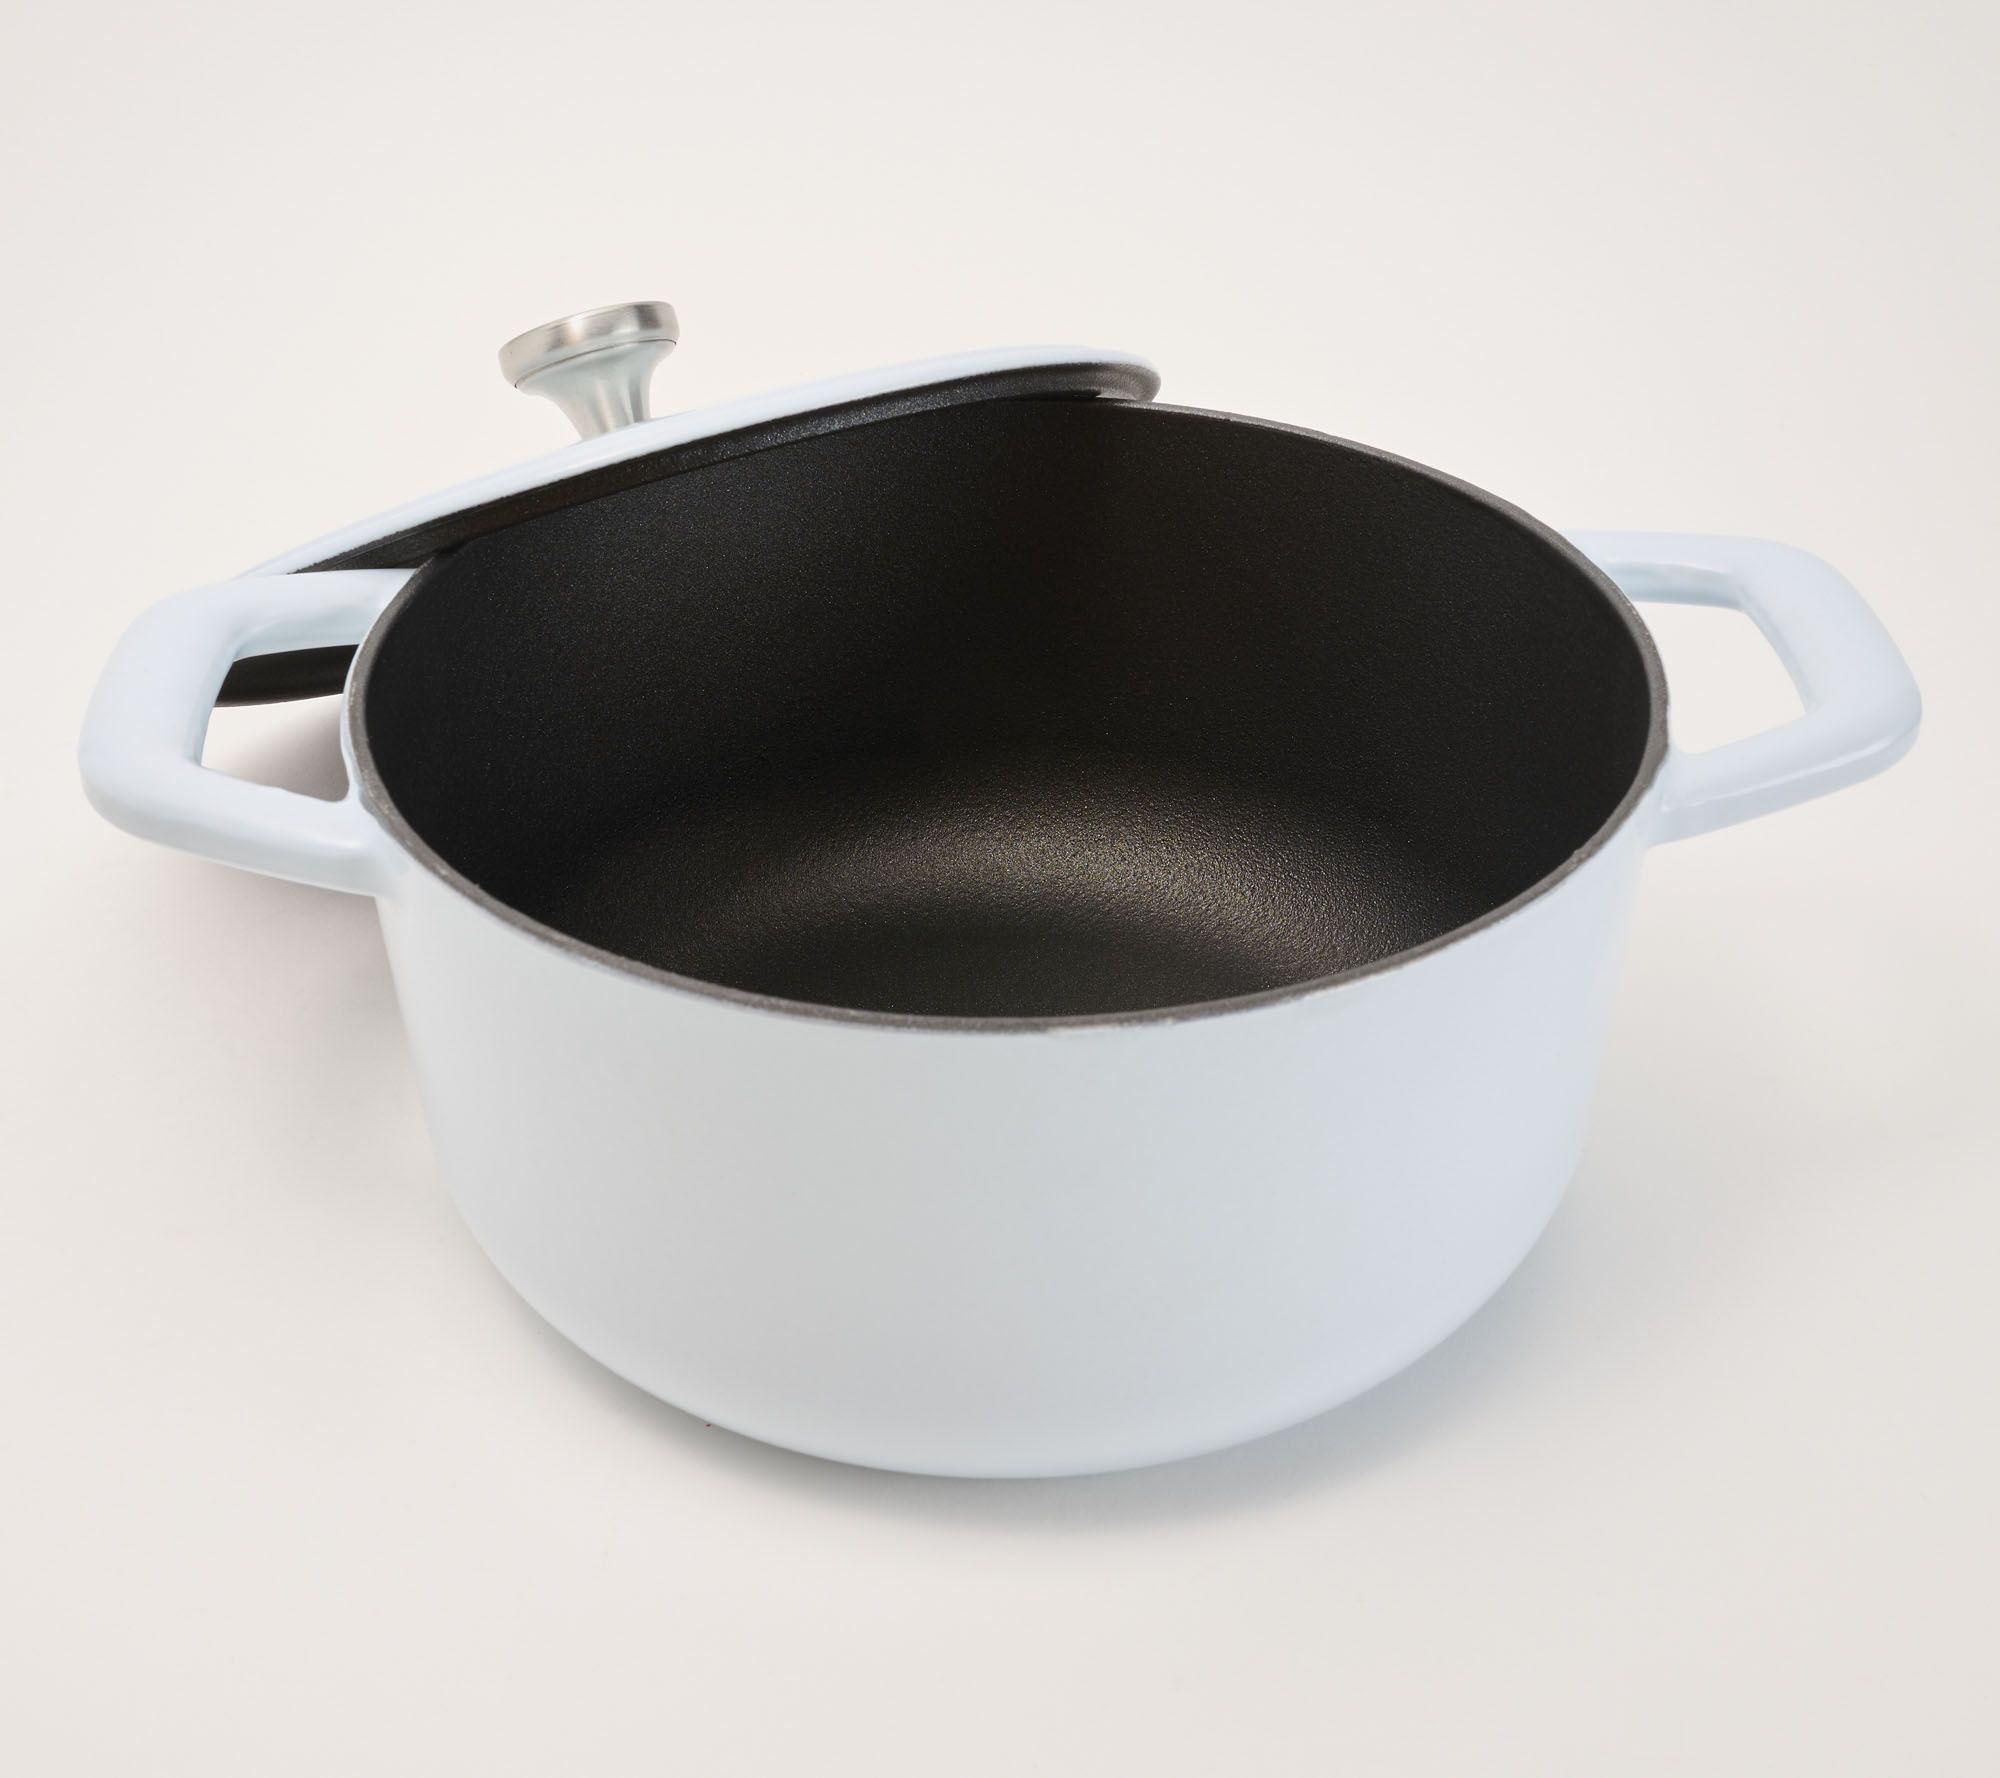 Cook's Essentials Sparkle Enamel Cast-Iron 5-qt Dutch Oven Trivet Black MCM  Pot